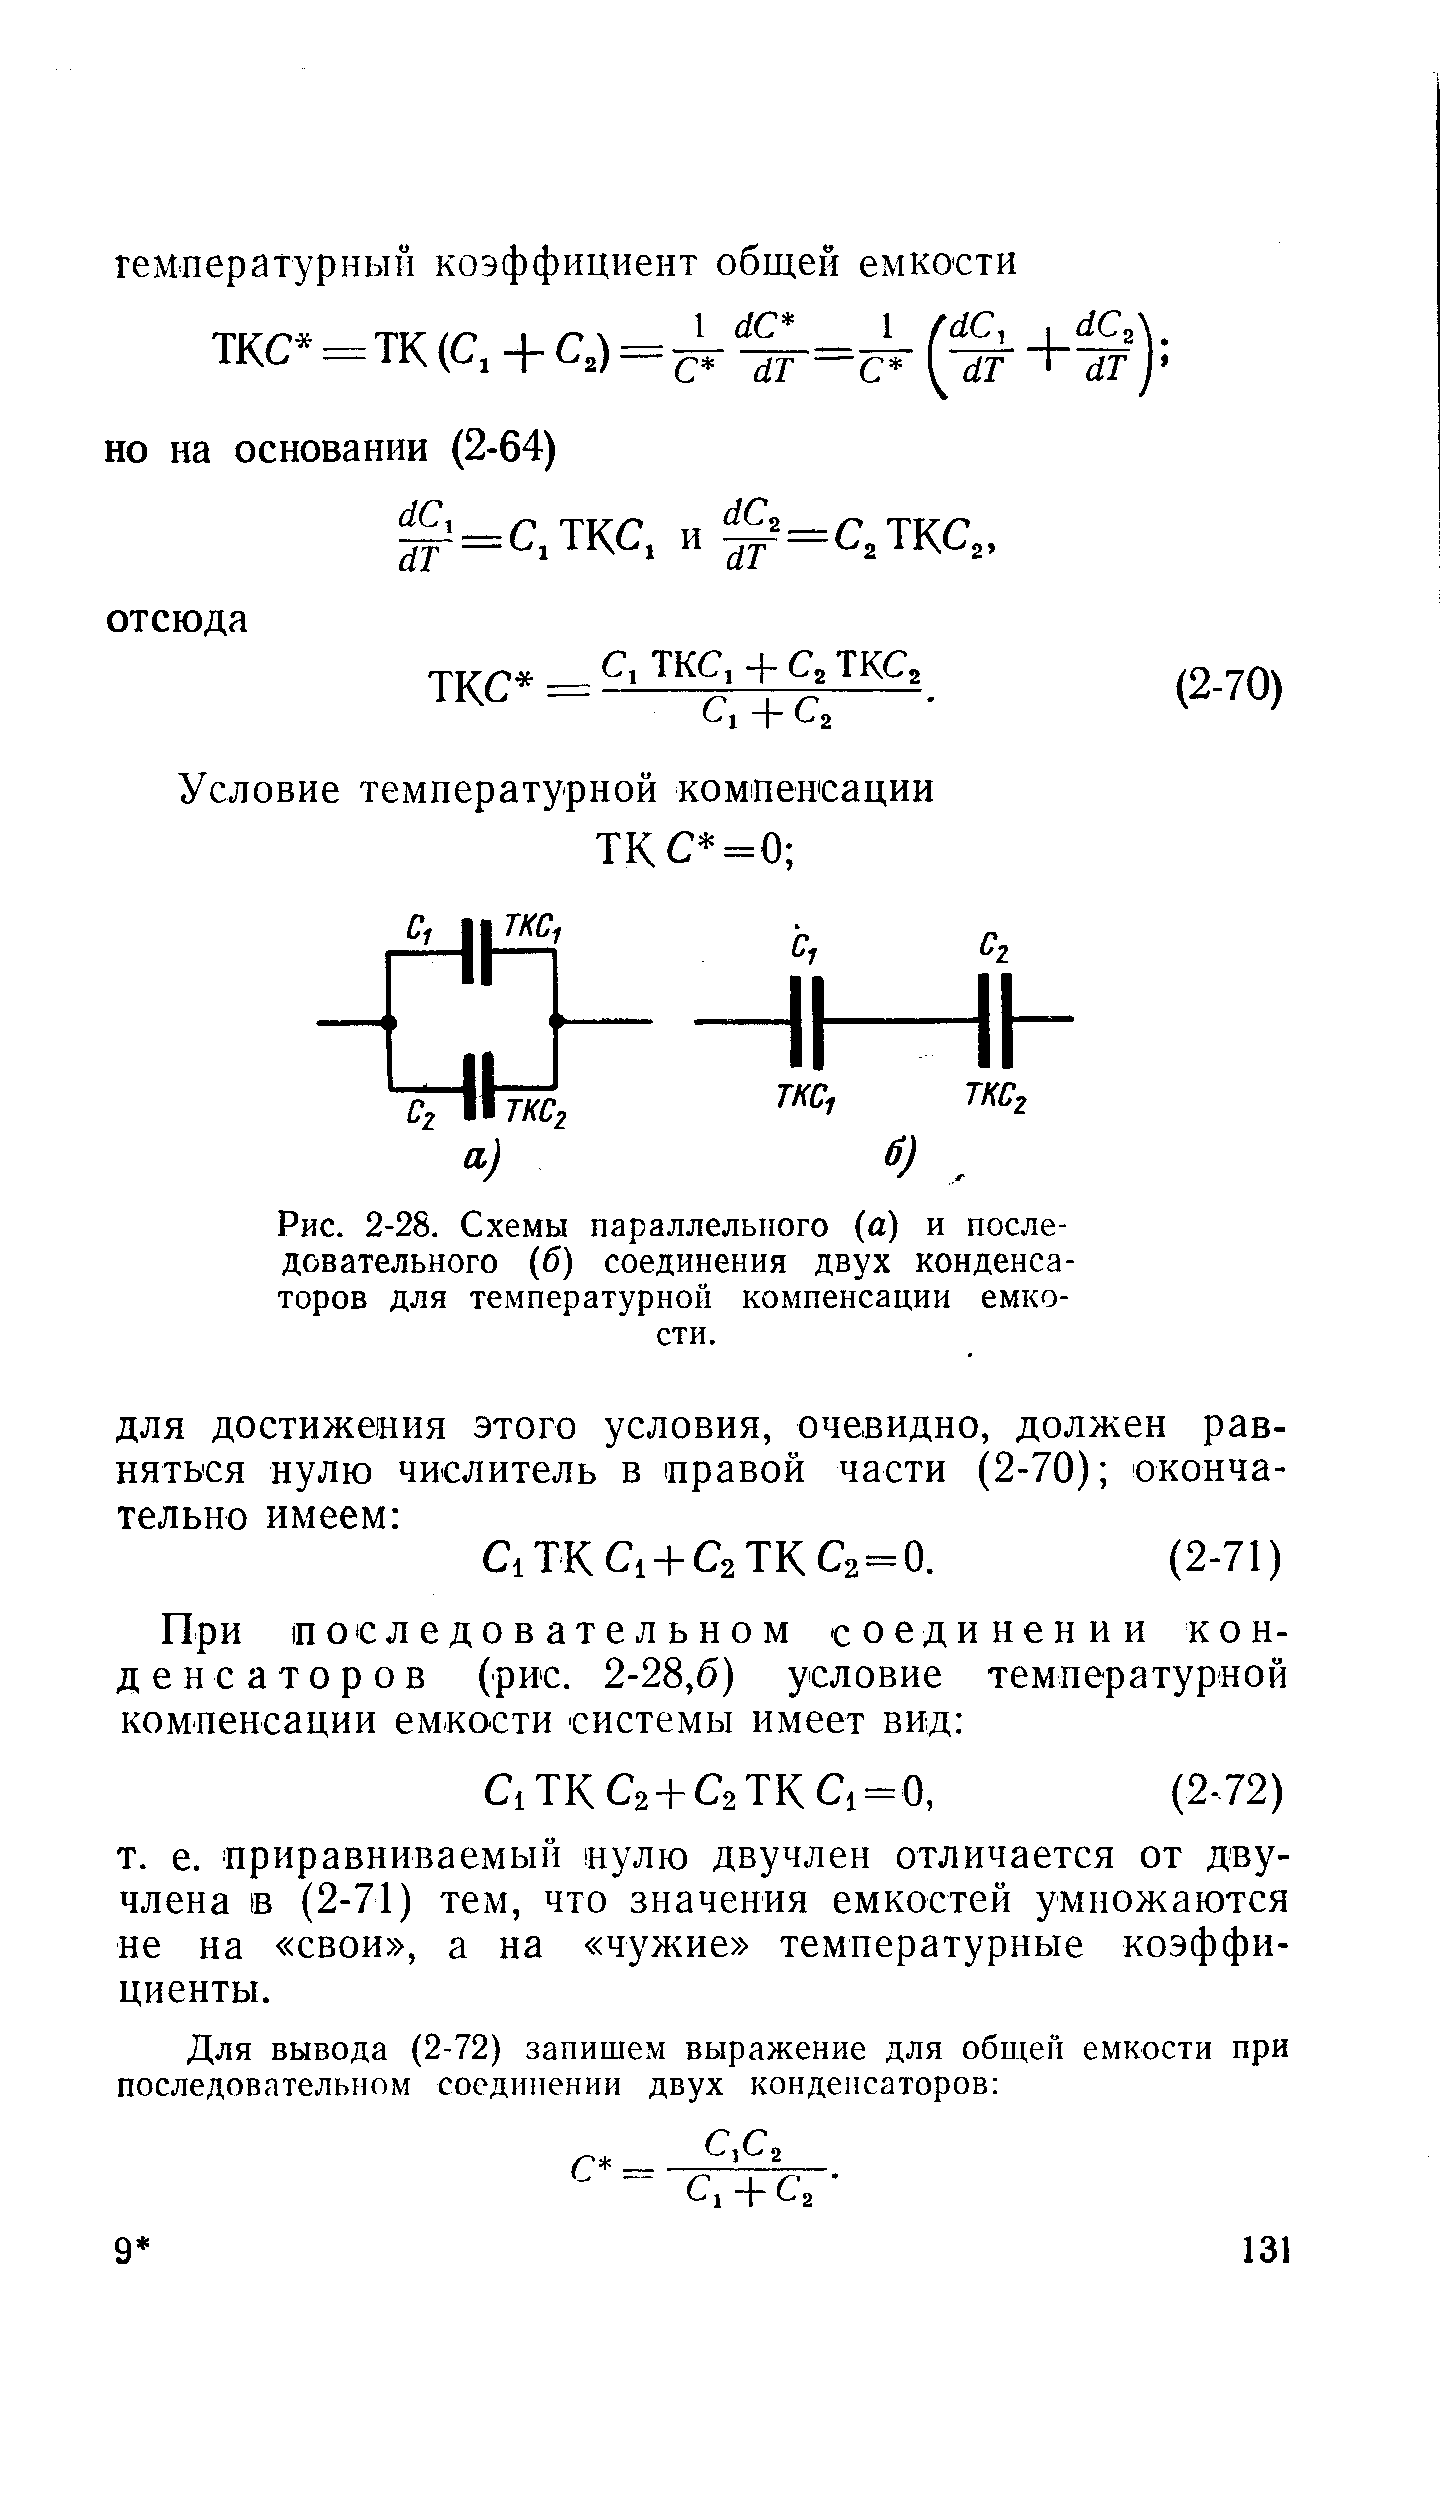 Рис. 2-28. Схемы параллельного (а) и последовательного (б) соединения двух конденсаторов для температурной компенсации емкости.
